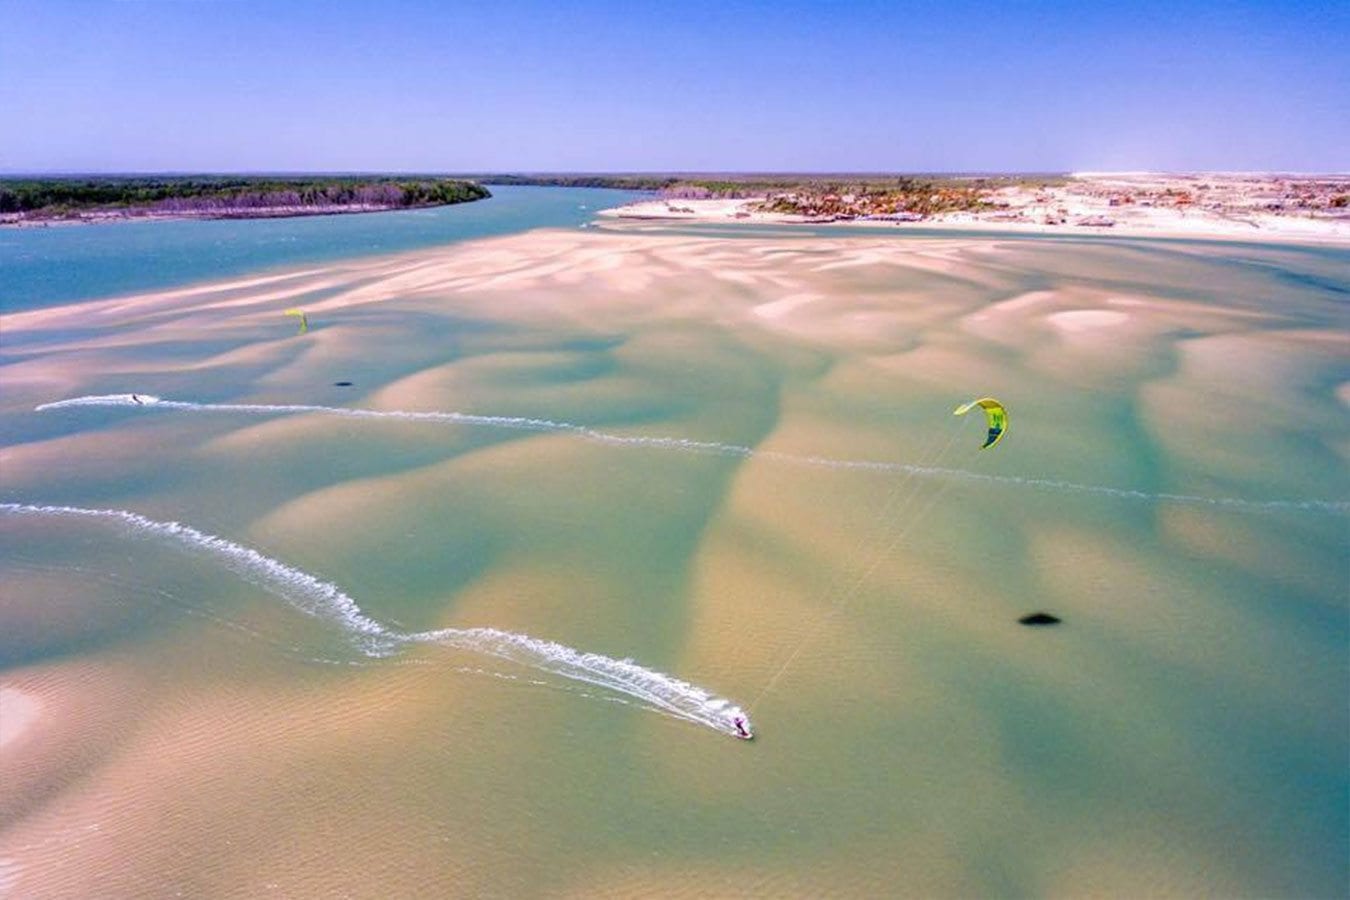 Drone drops Restube to kitesurfer in Brazil